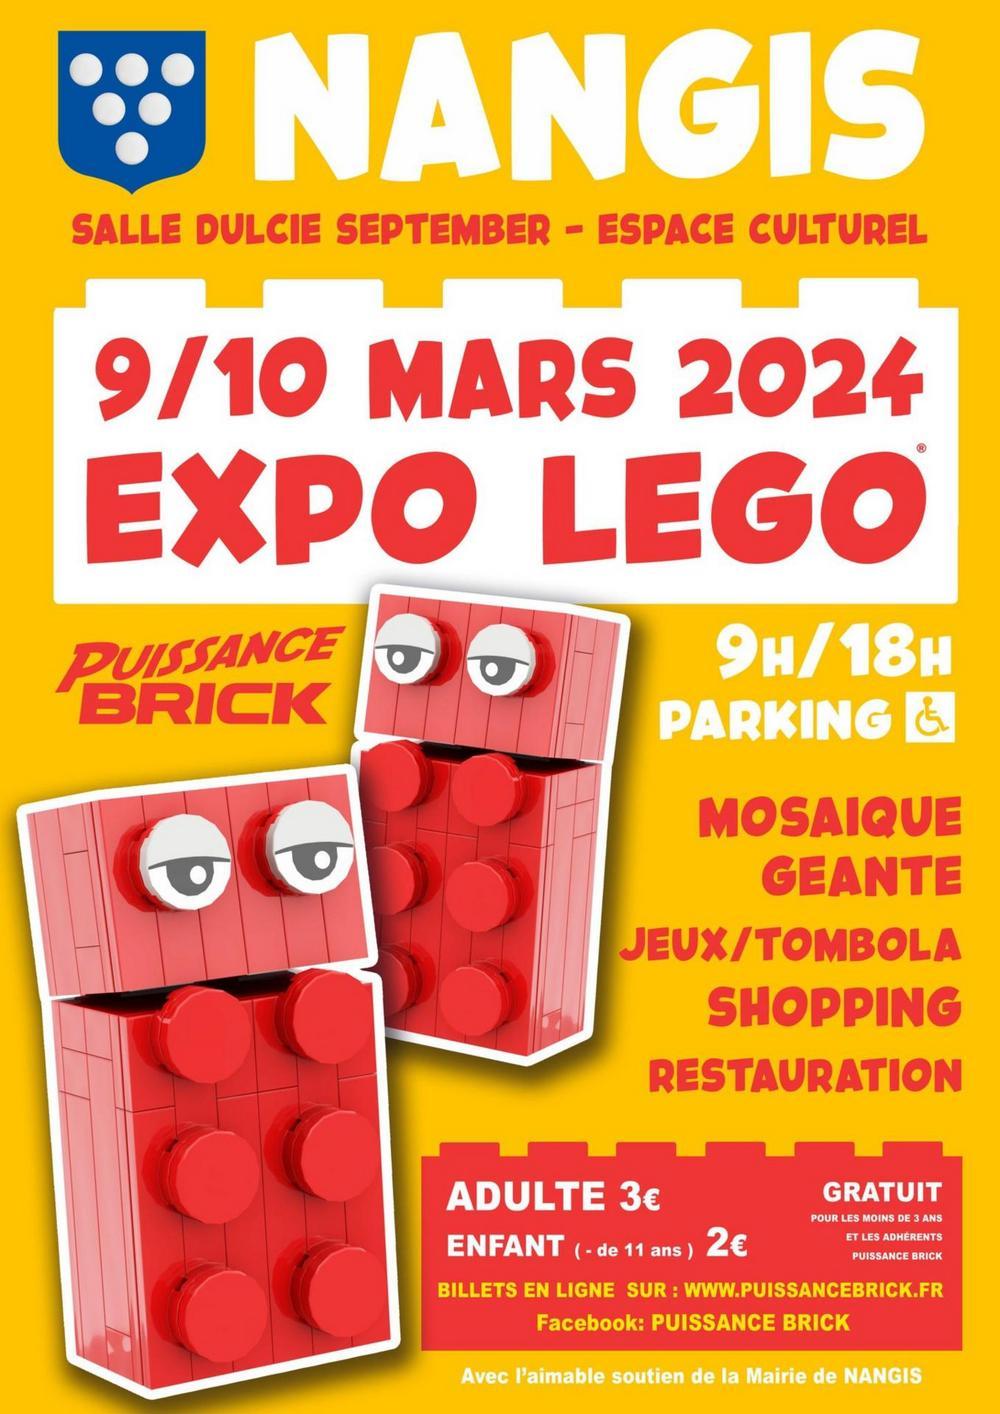 Exposition Expo 100 lego puissance brick Nangis 2024 du 9 au 10 mars 2024